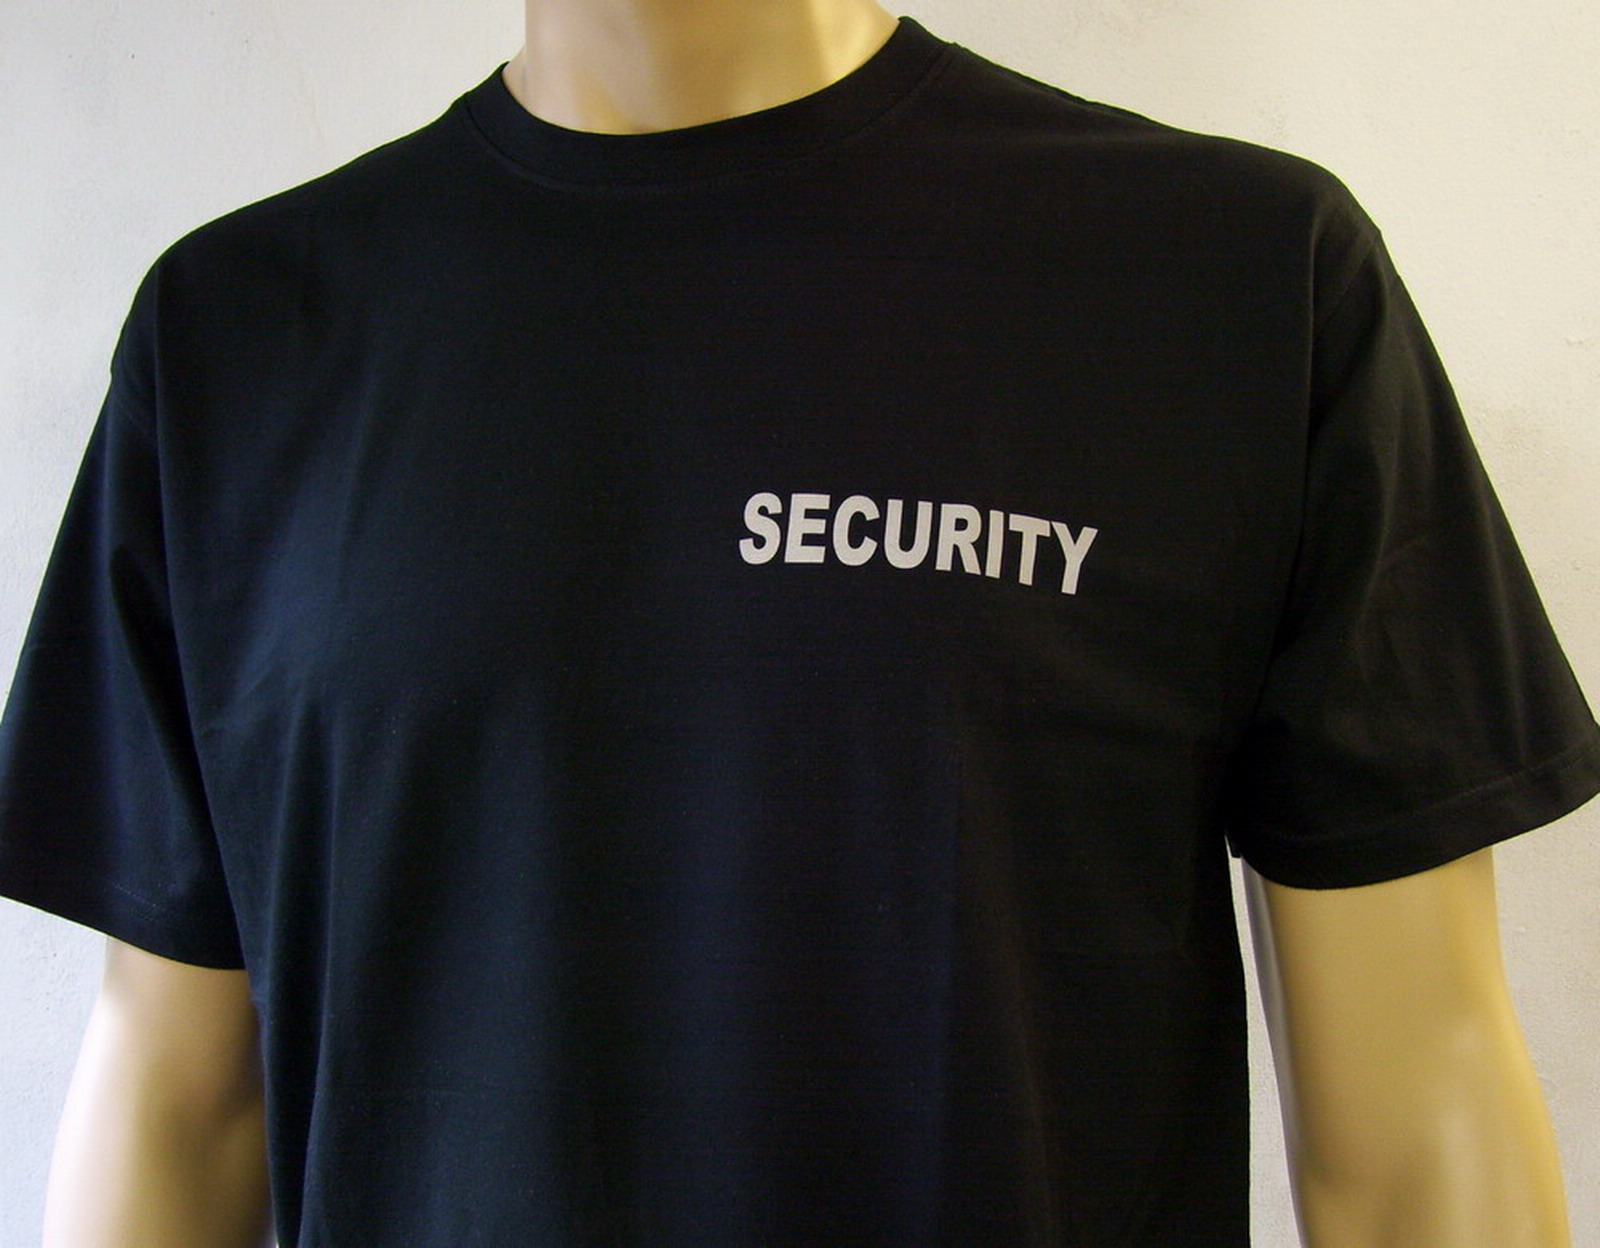 SECURITY Damen T-Shirt Text silberreflex schwarz oder marineblau S bis XXL 